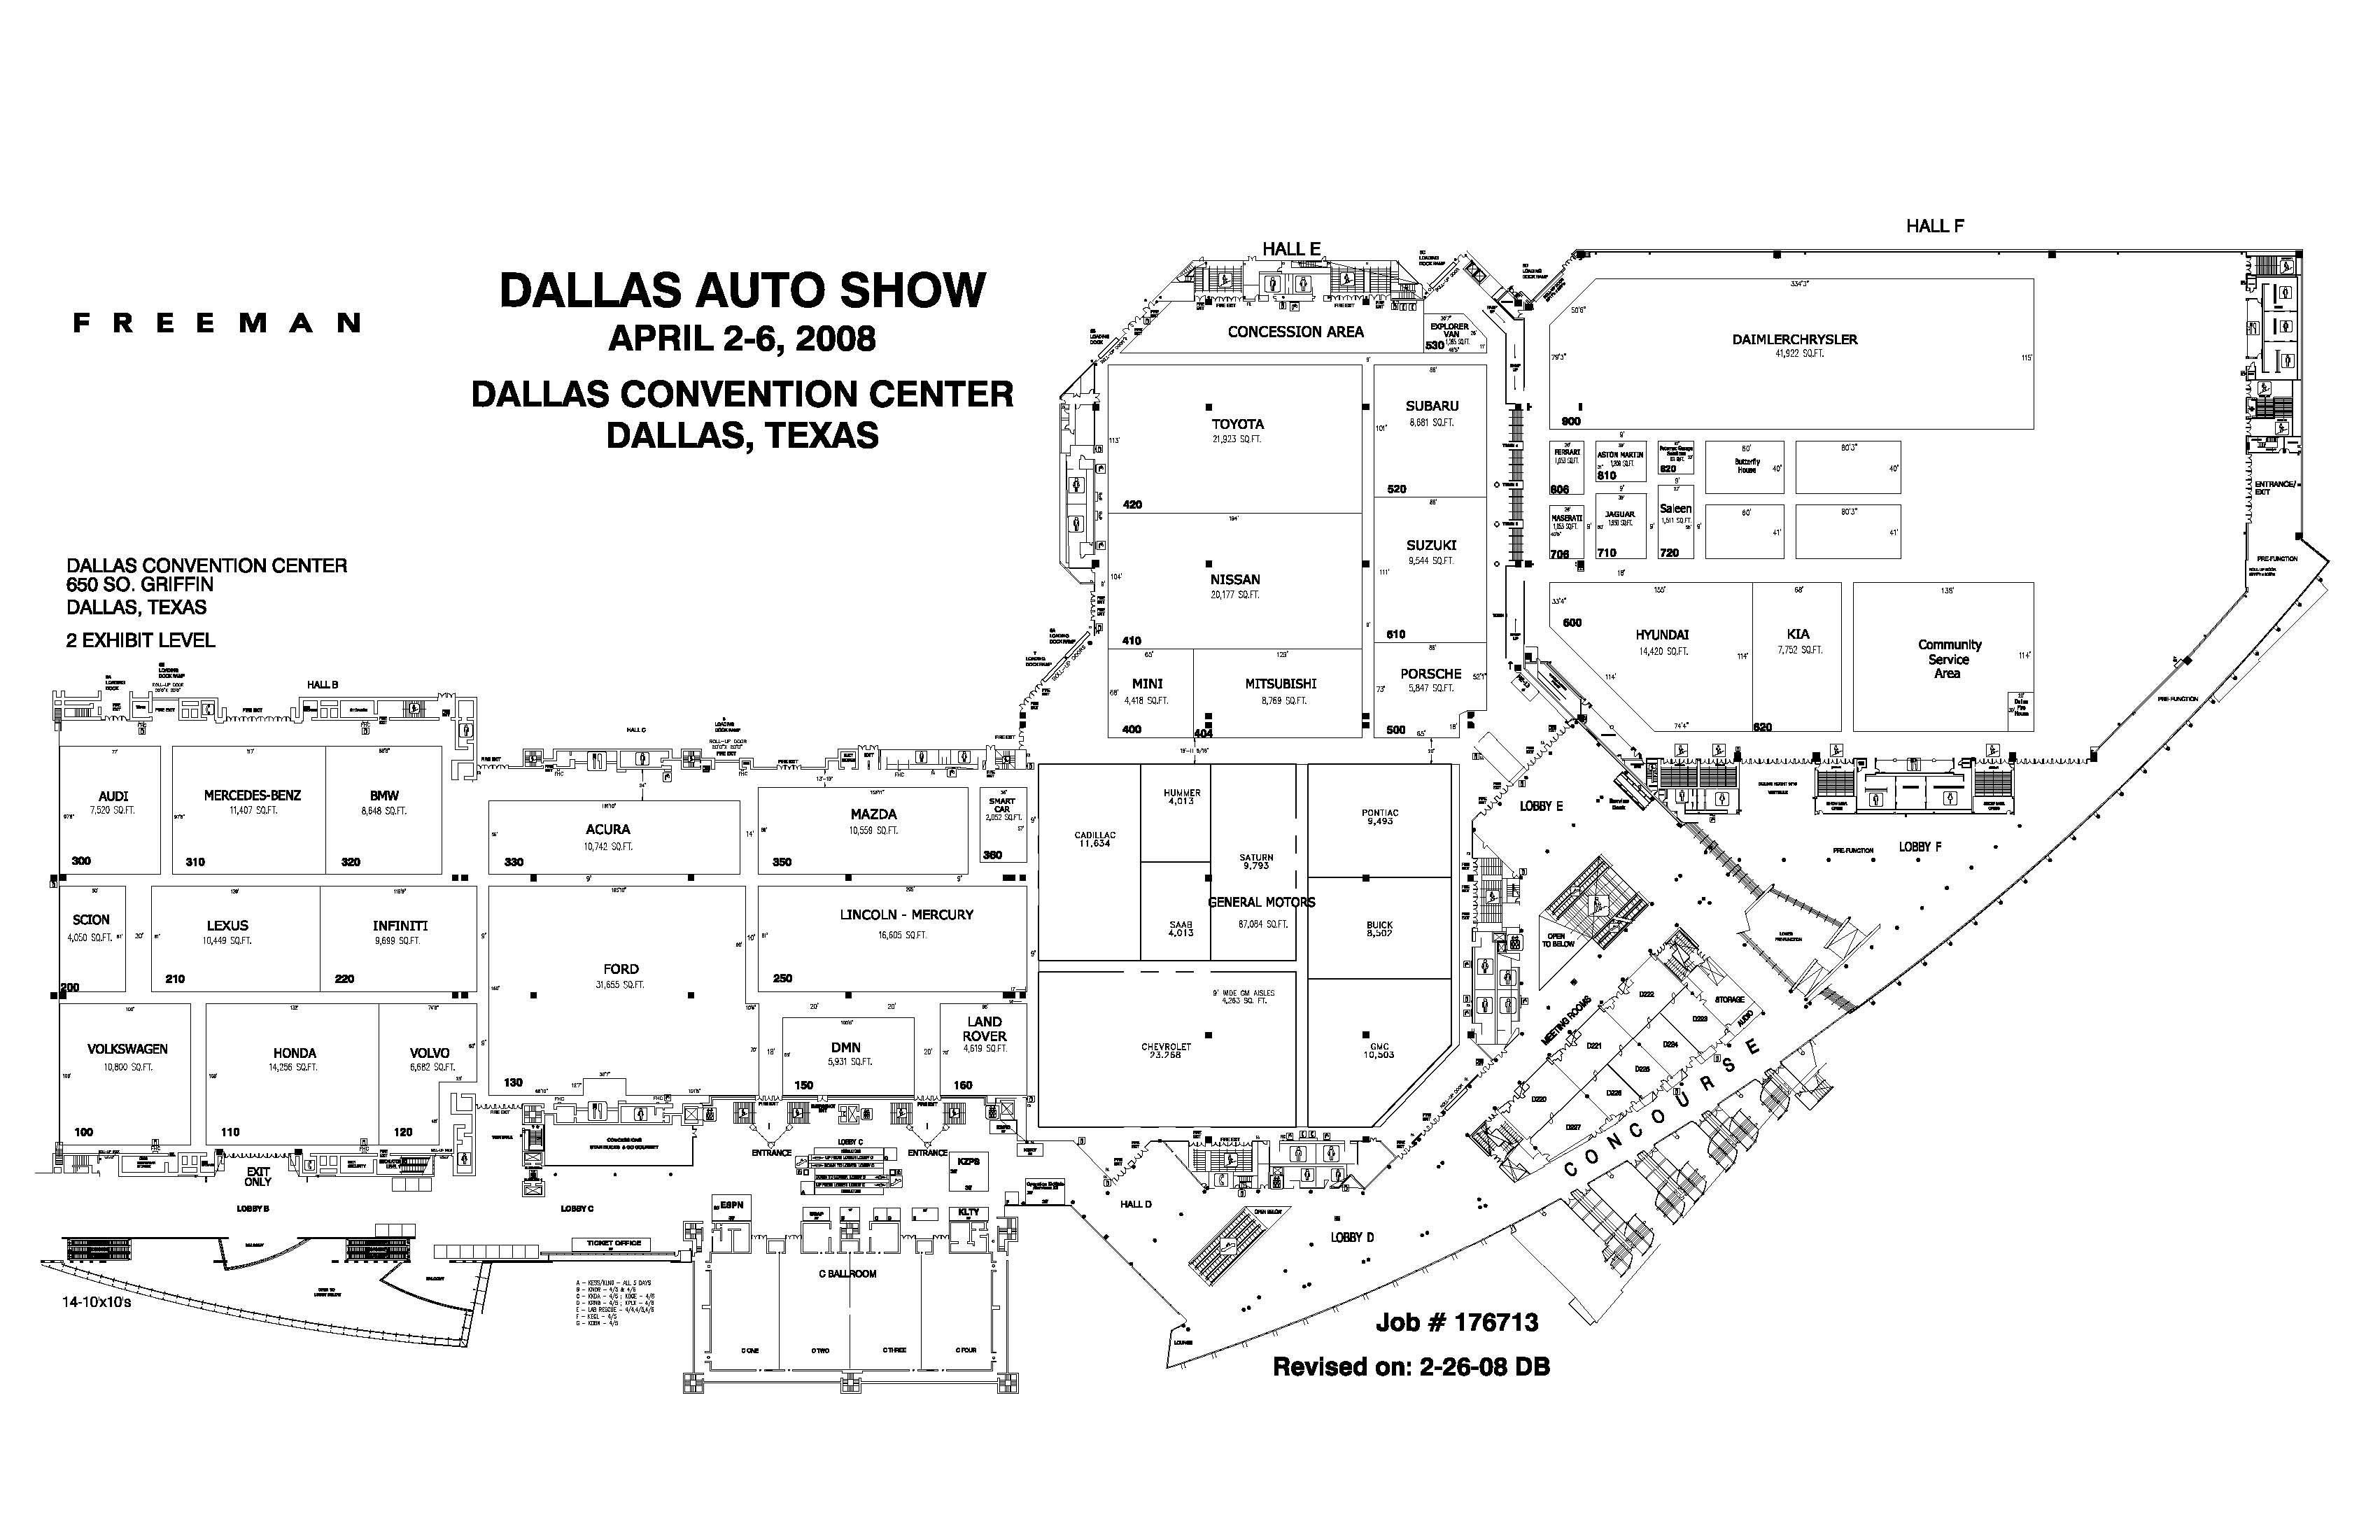 Dallas Auto Show